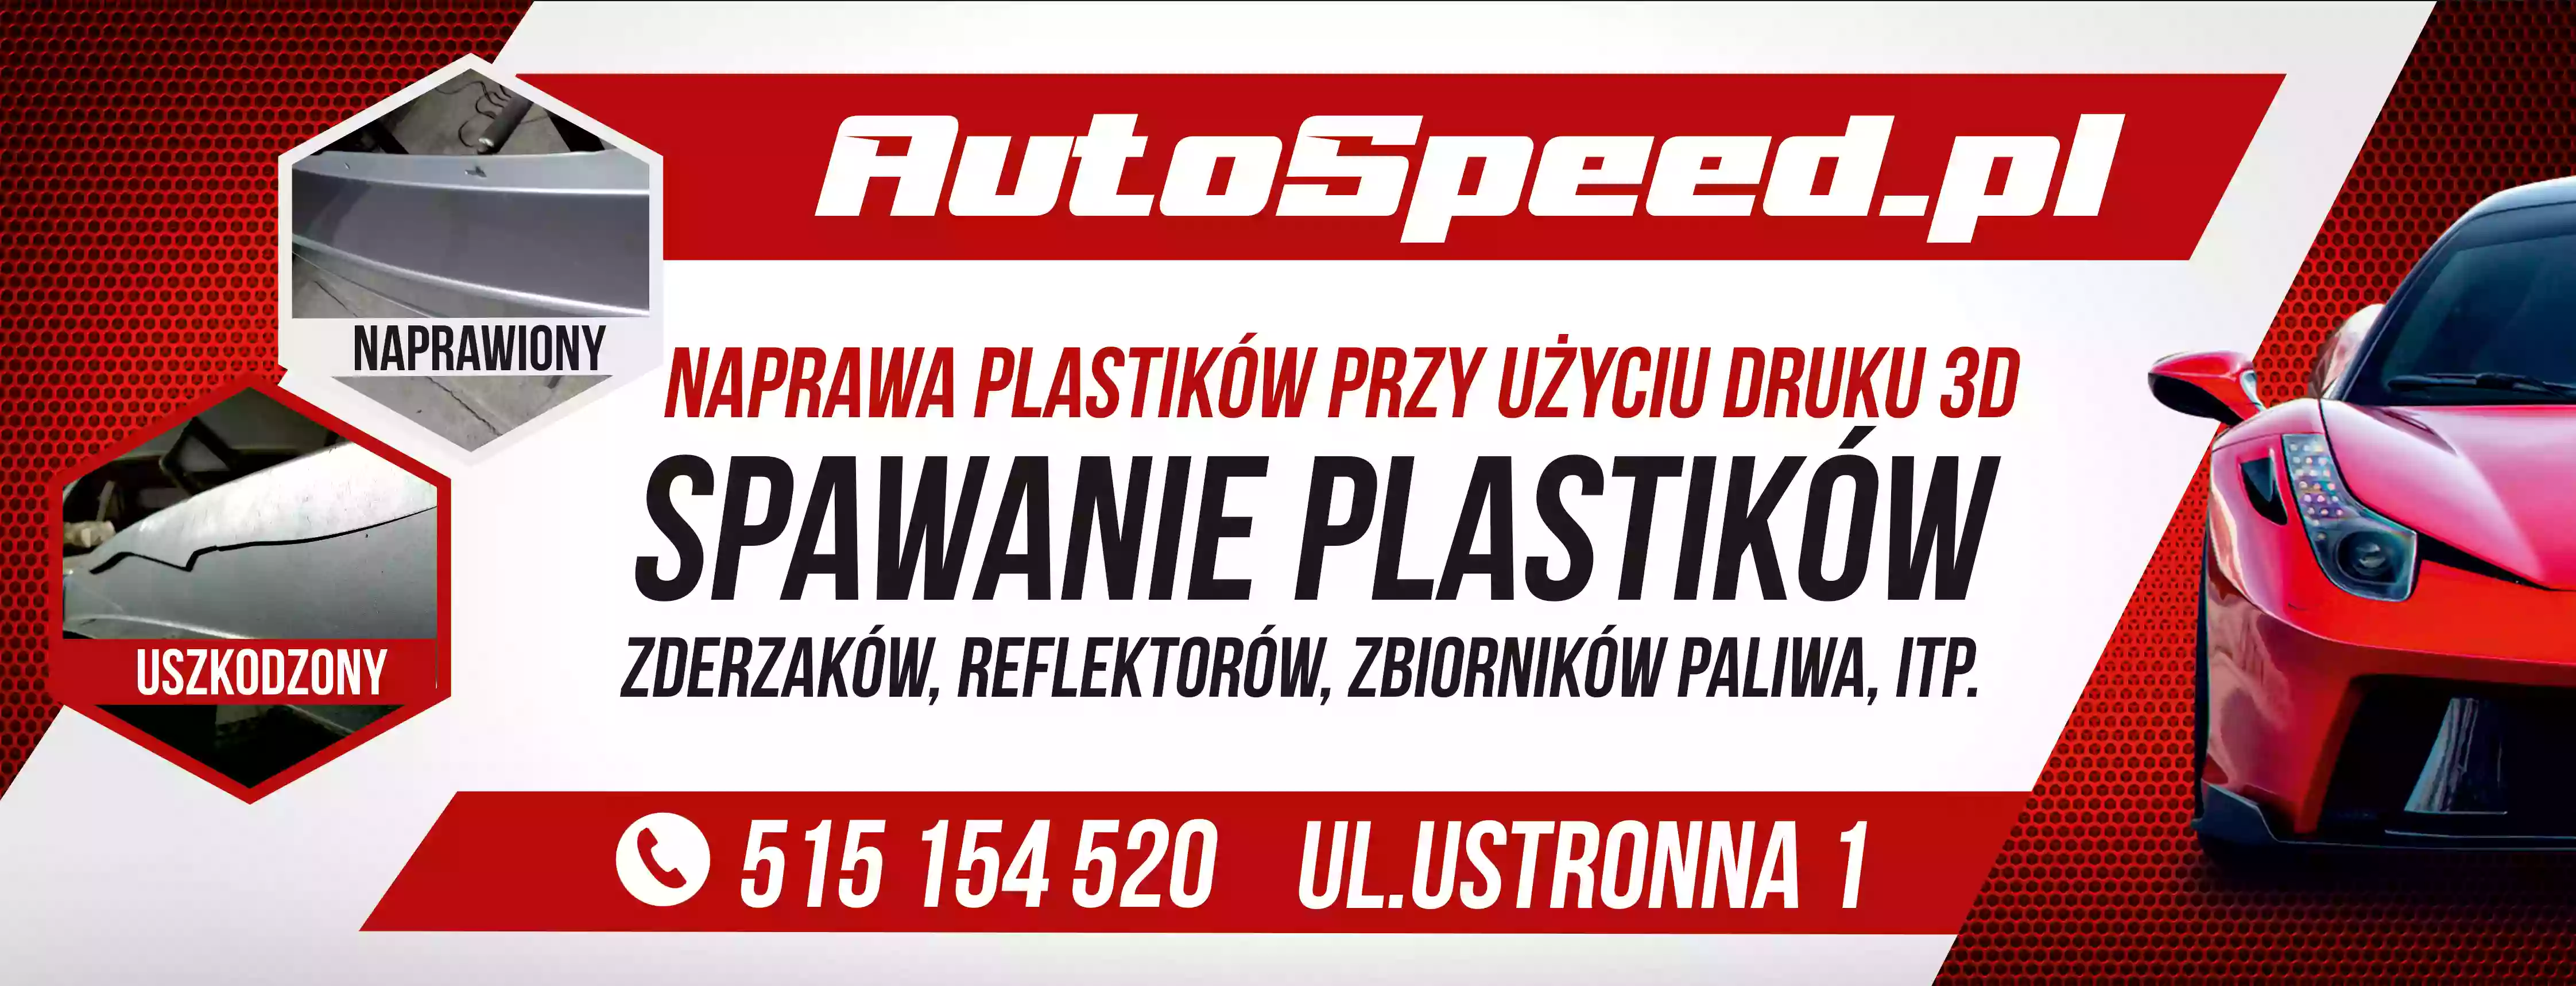 AutoSpeed Klejenie Plastików Białystok